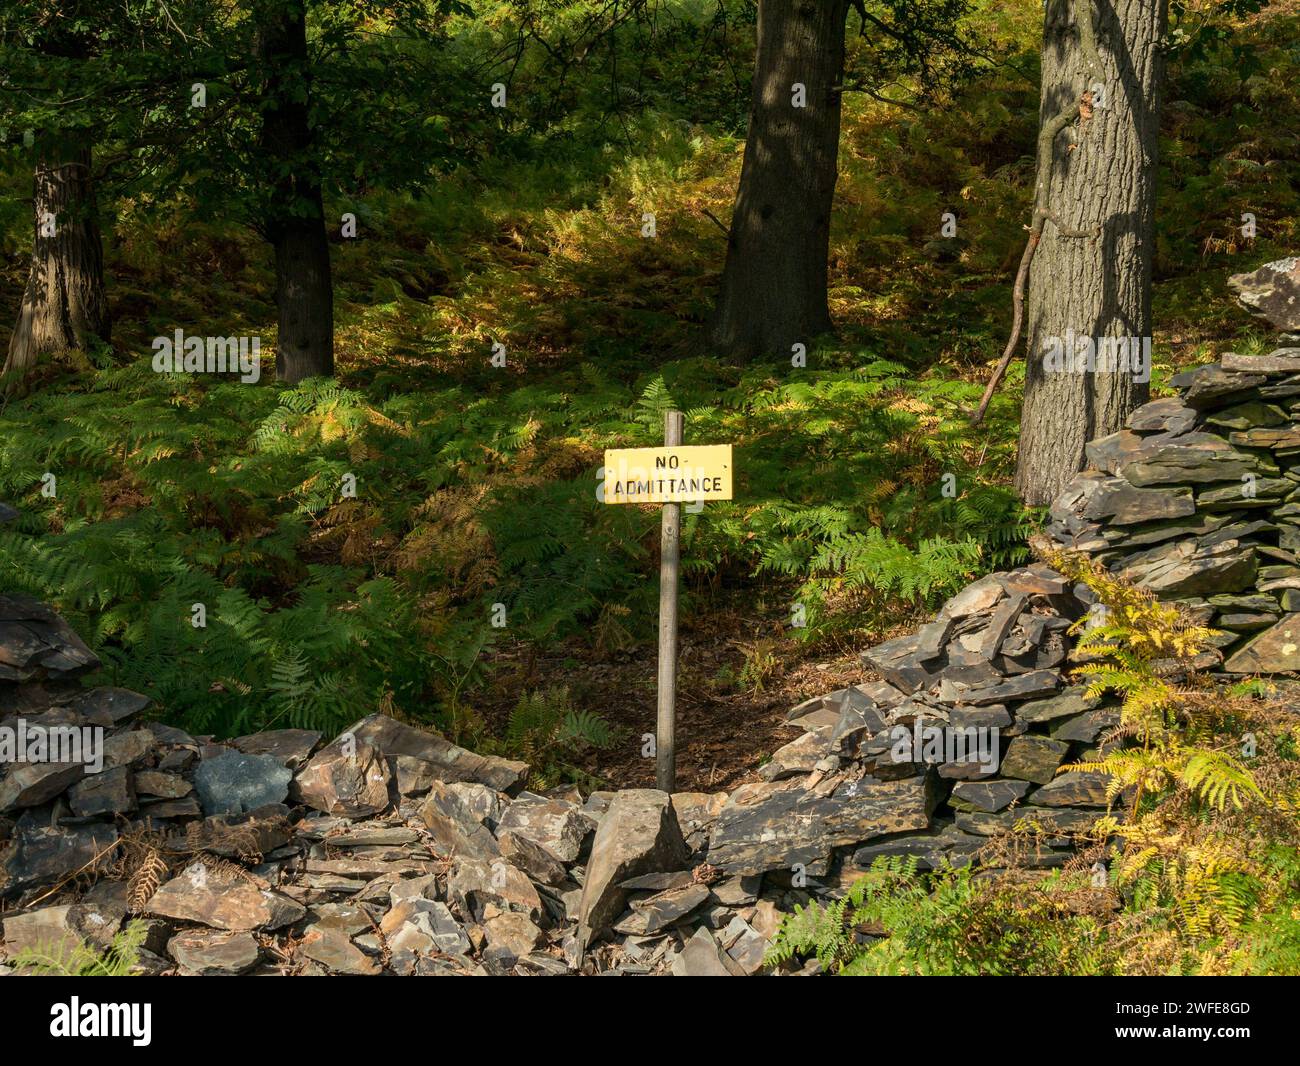 Gelbes und schwarzes Schild „No Admittance“ hinter einer Trockenmauer im Naturschutzgebiet/Waldbewaldung, Bradgate Park, Leicestershire, England, Großbritannien Stockfoto